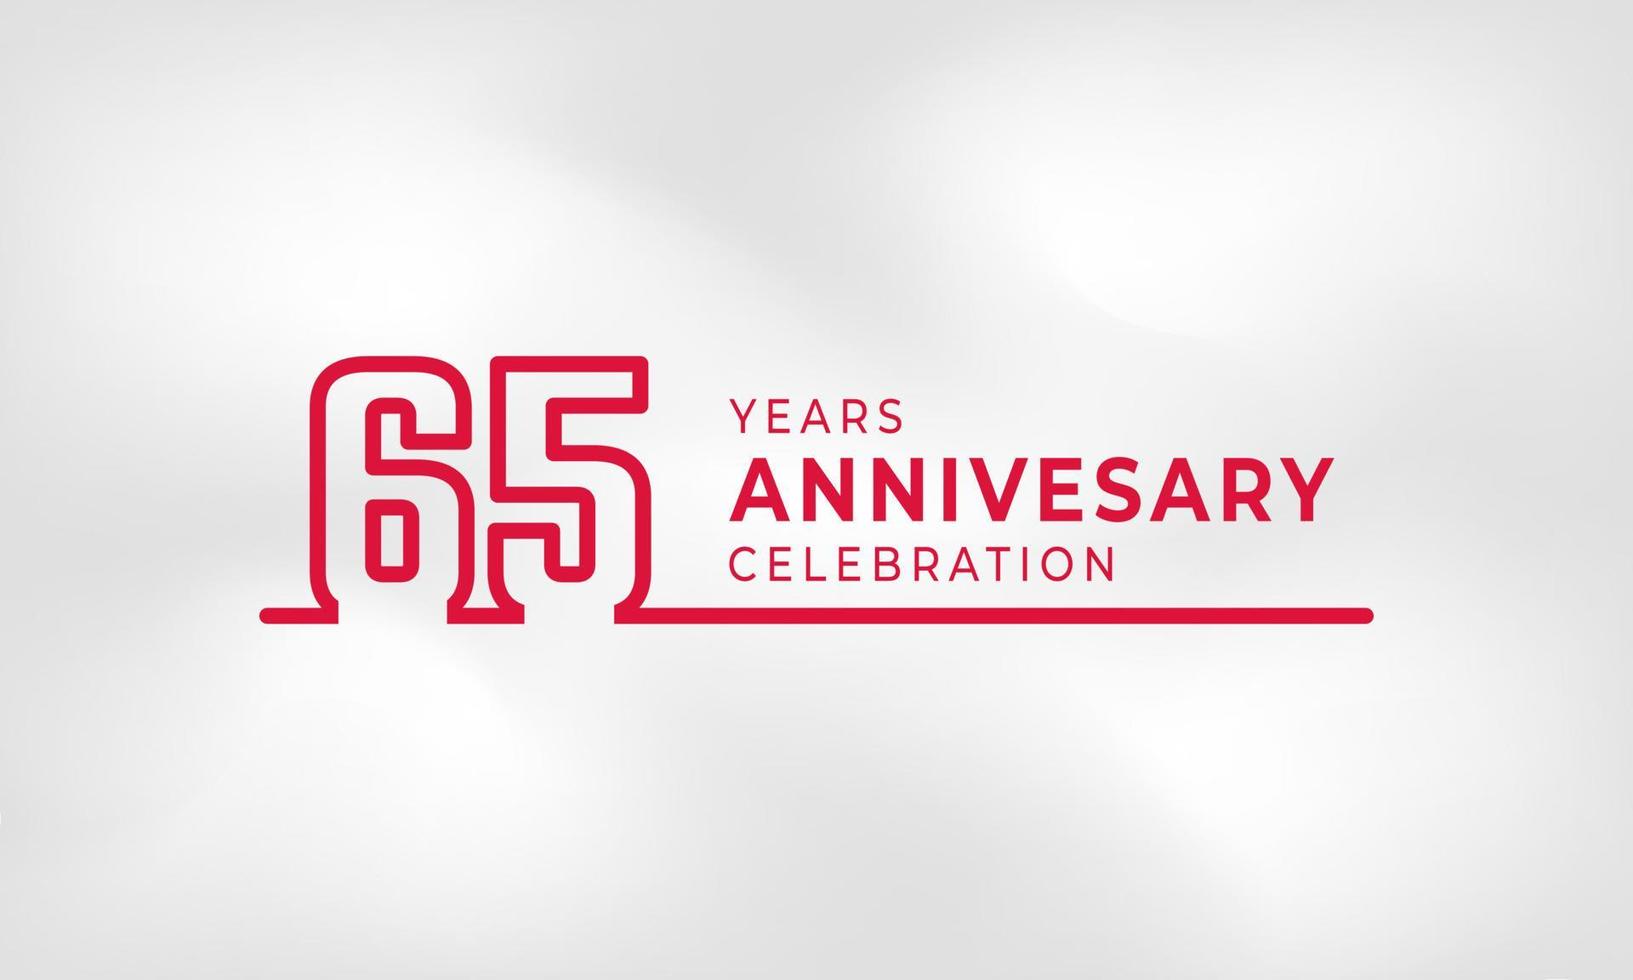 Celebração de aniversário de 65 anos ligada ao contorno do logotipo cor vermelha para evento de celebração, casamento, cartão de felicitações e convite isolado no fundo de textura branca vetor